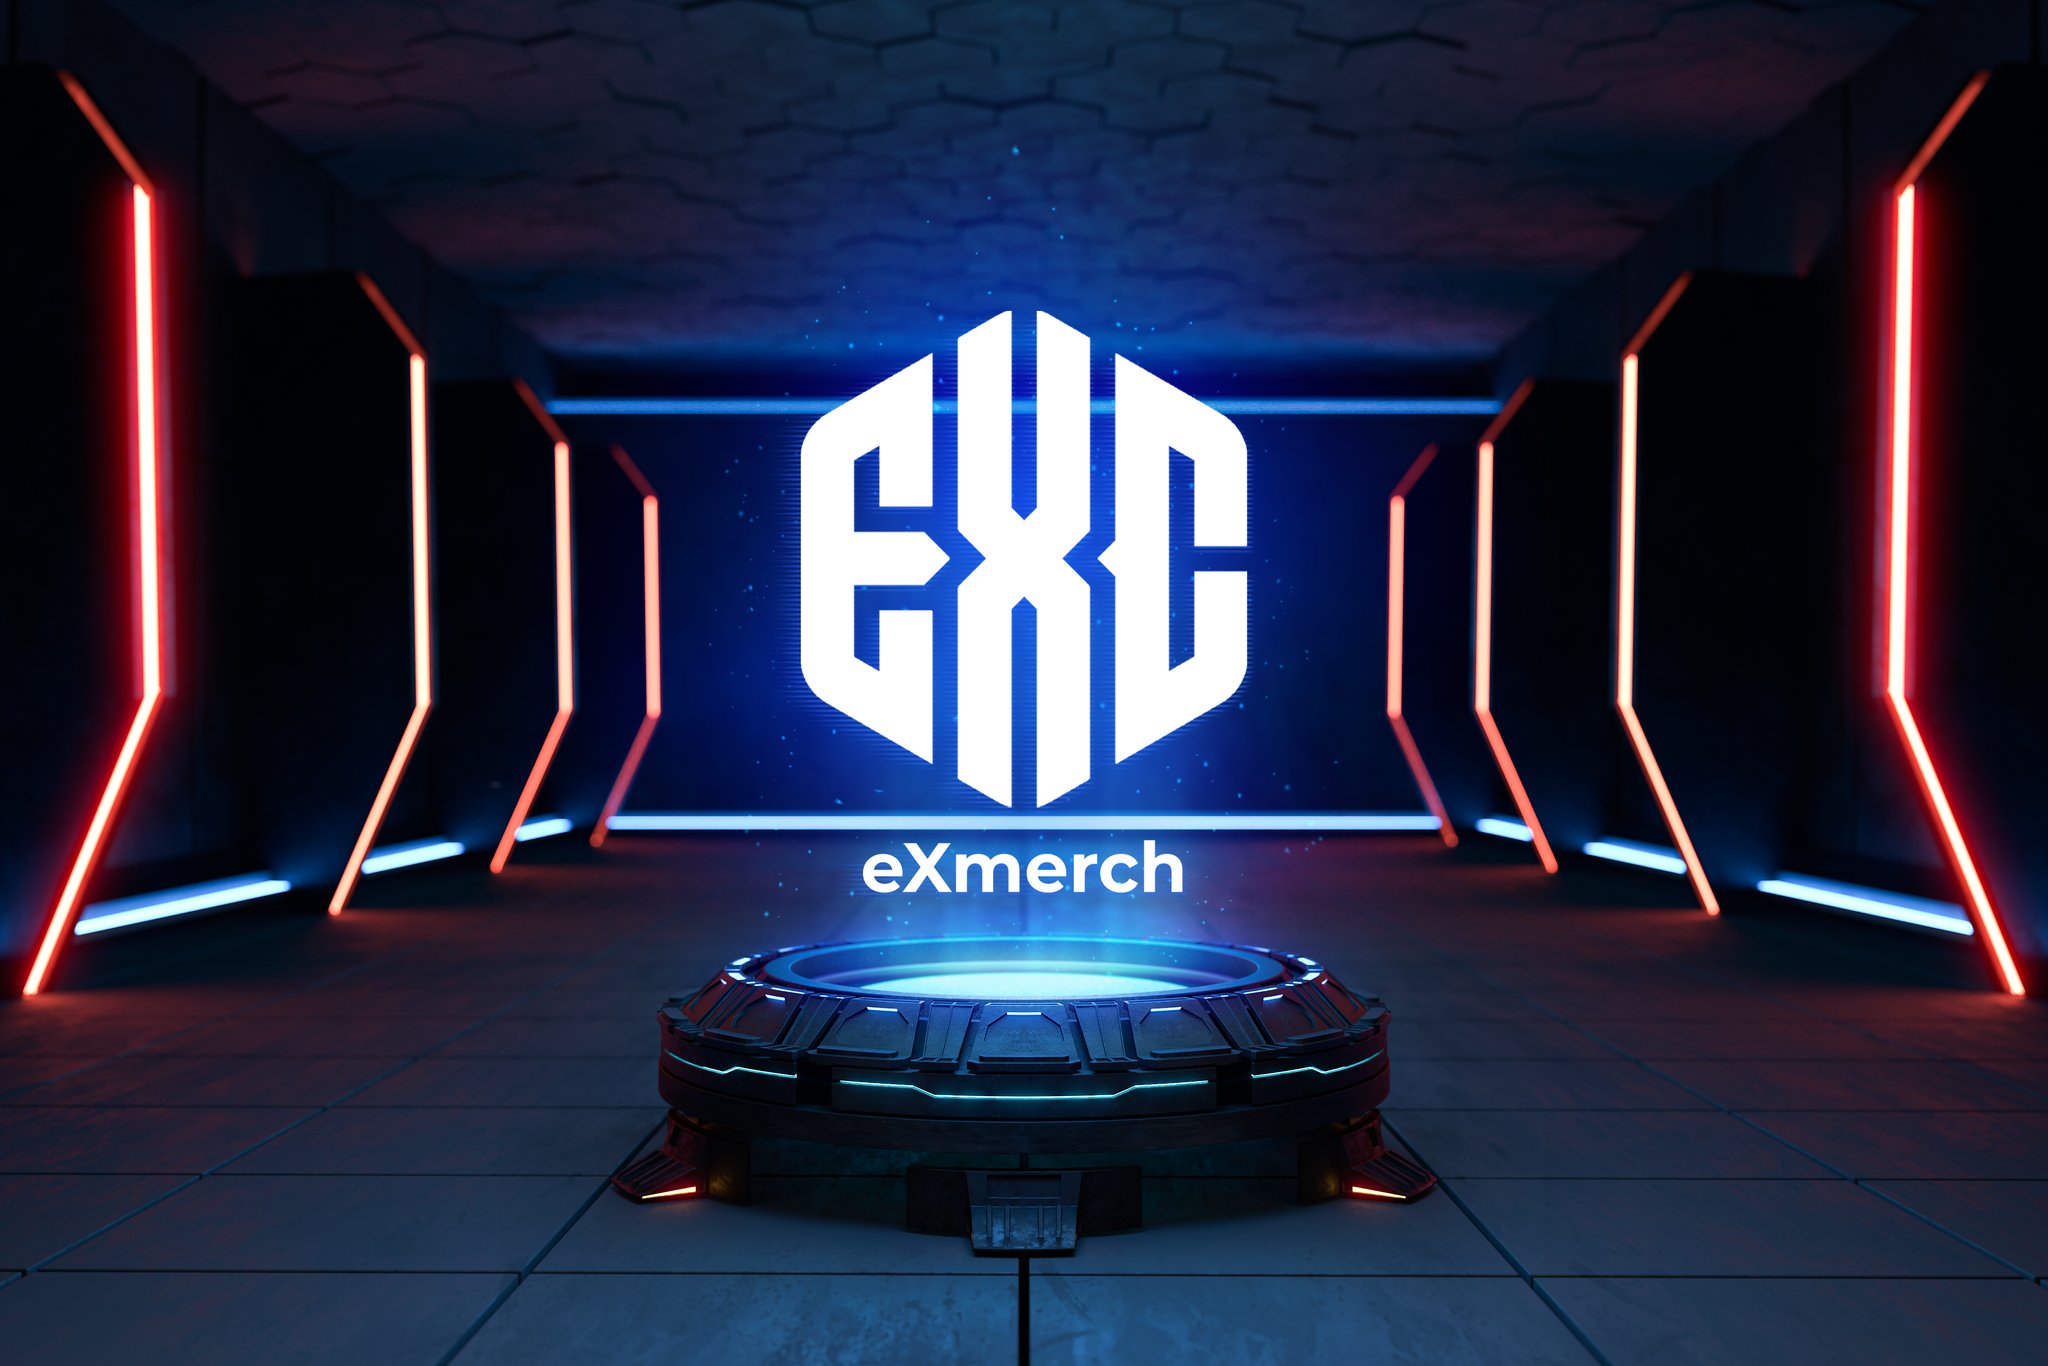 eXmerch Store [Web]